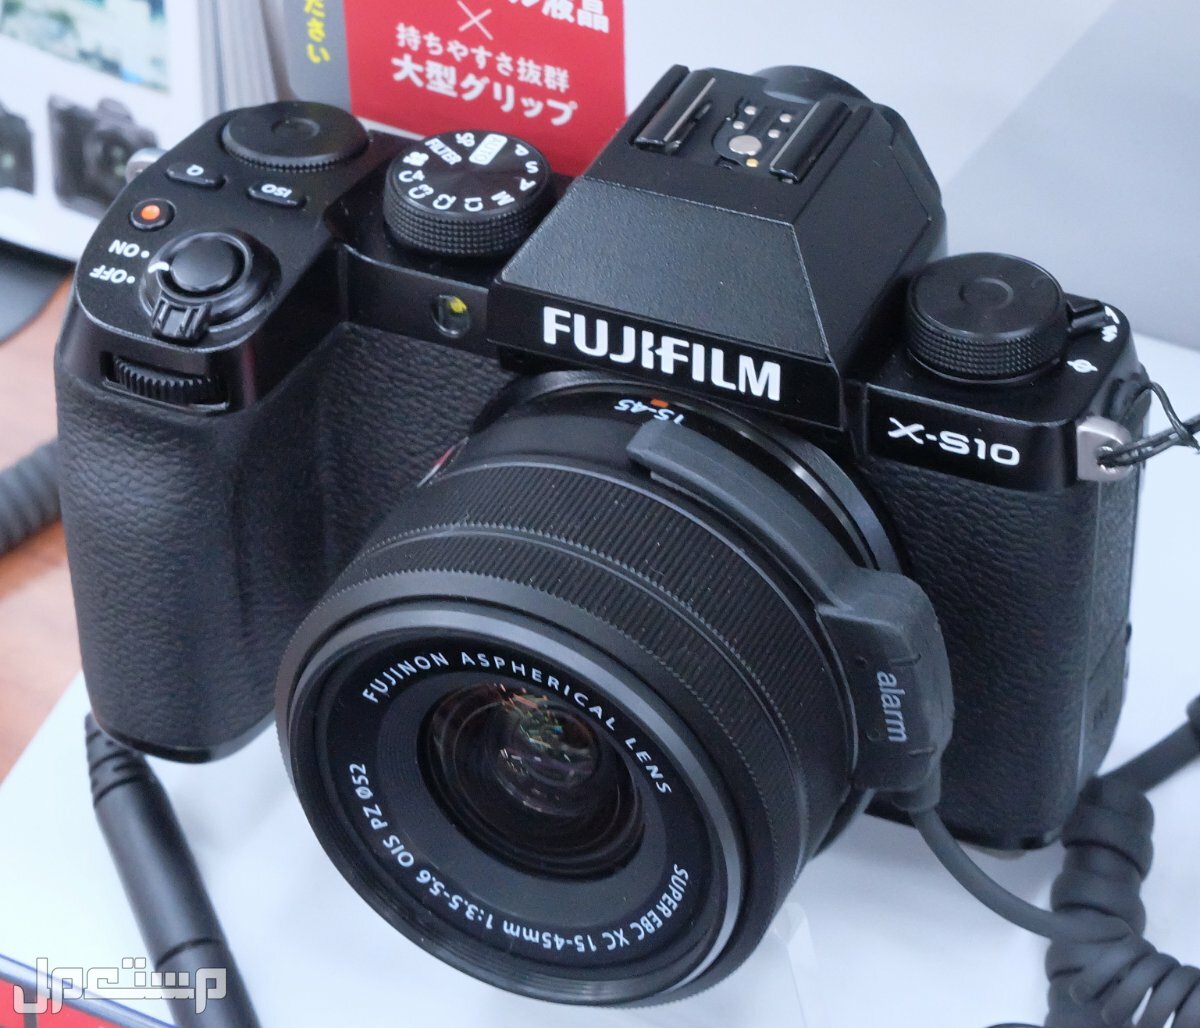 مواصفات ومميزات وعيوب كاميرات التصوير فوجي فيلم في الكويت مواصفات كاميرا Fujifilm X-S10